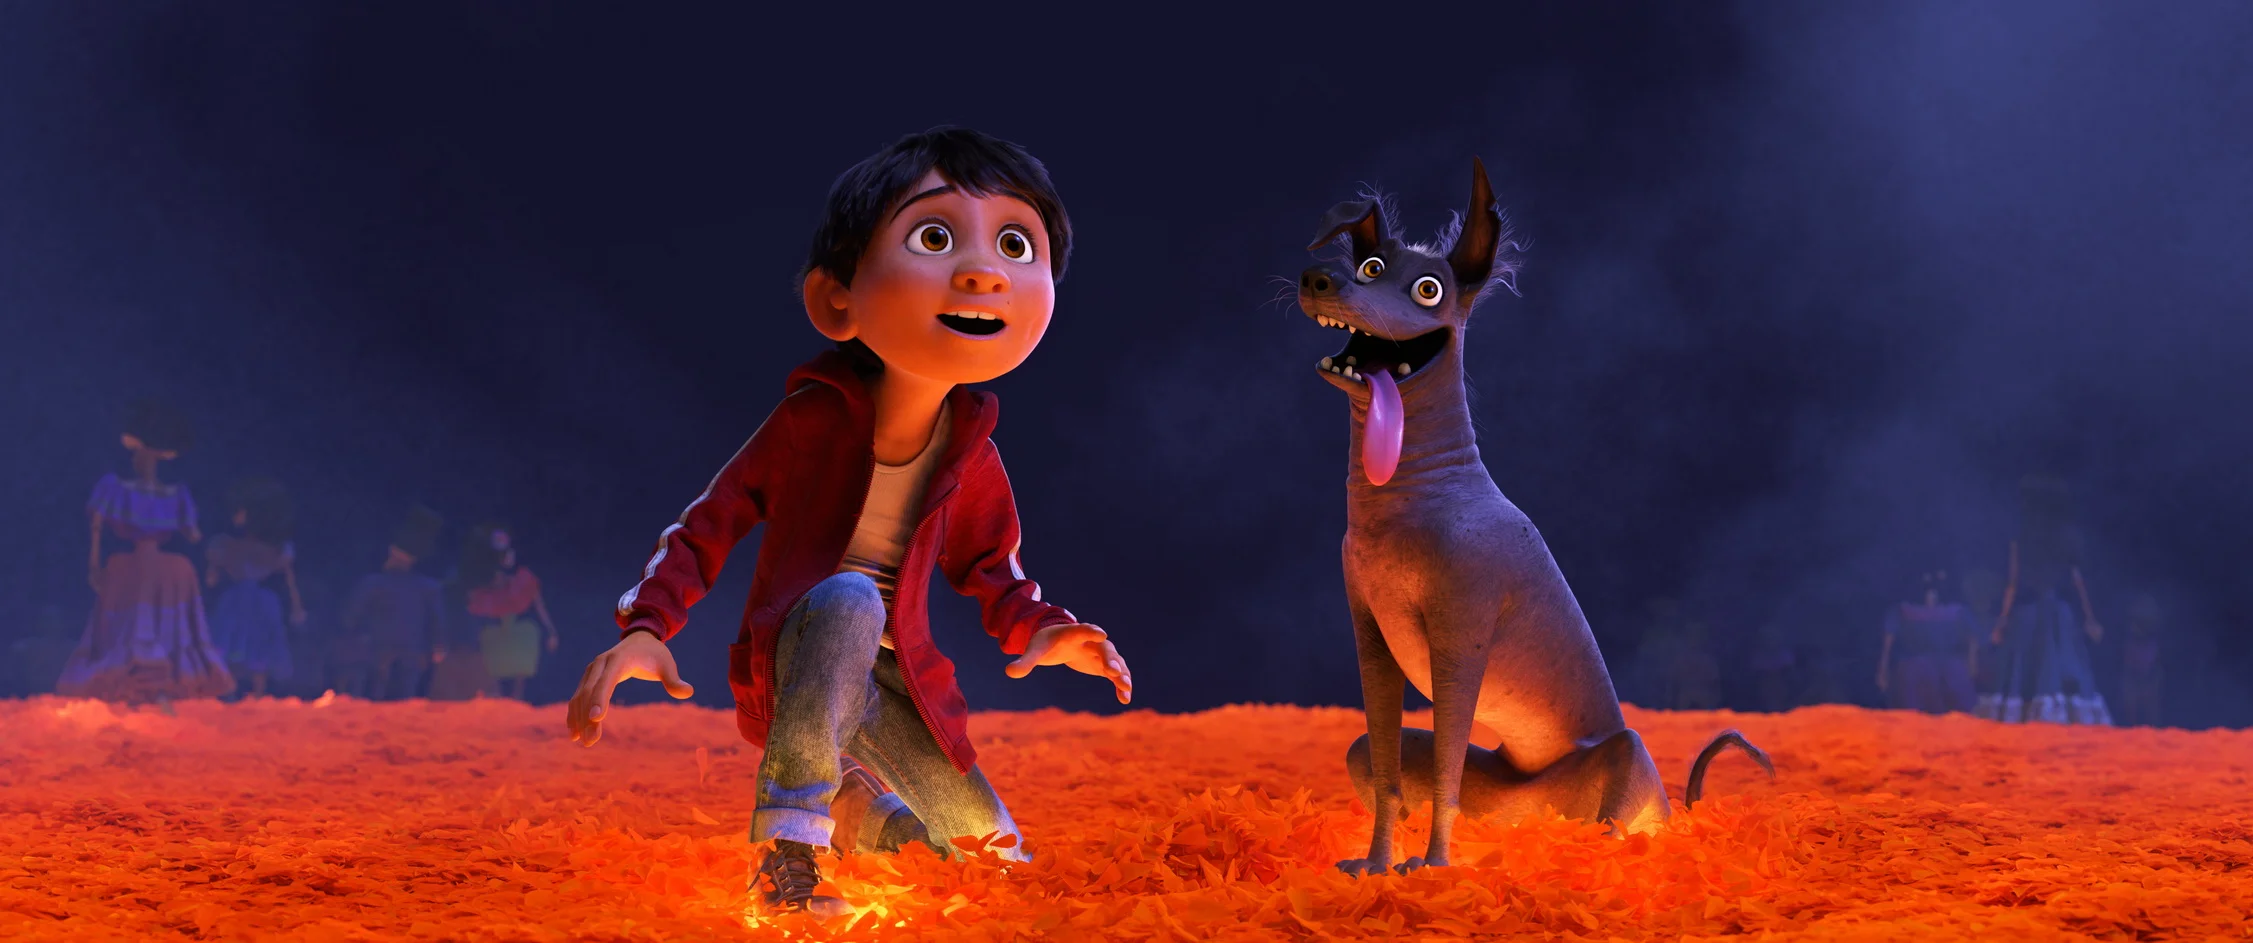 «Полон жизни»: мнения критиков о новом мультфильме Pixar «Тайна Коко» - фото 1